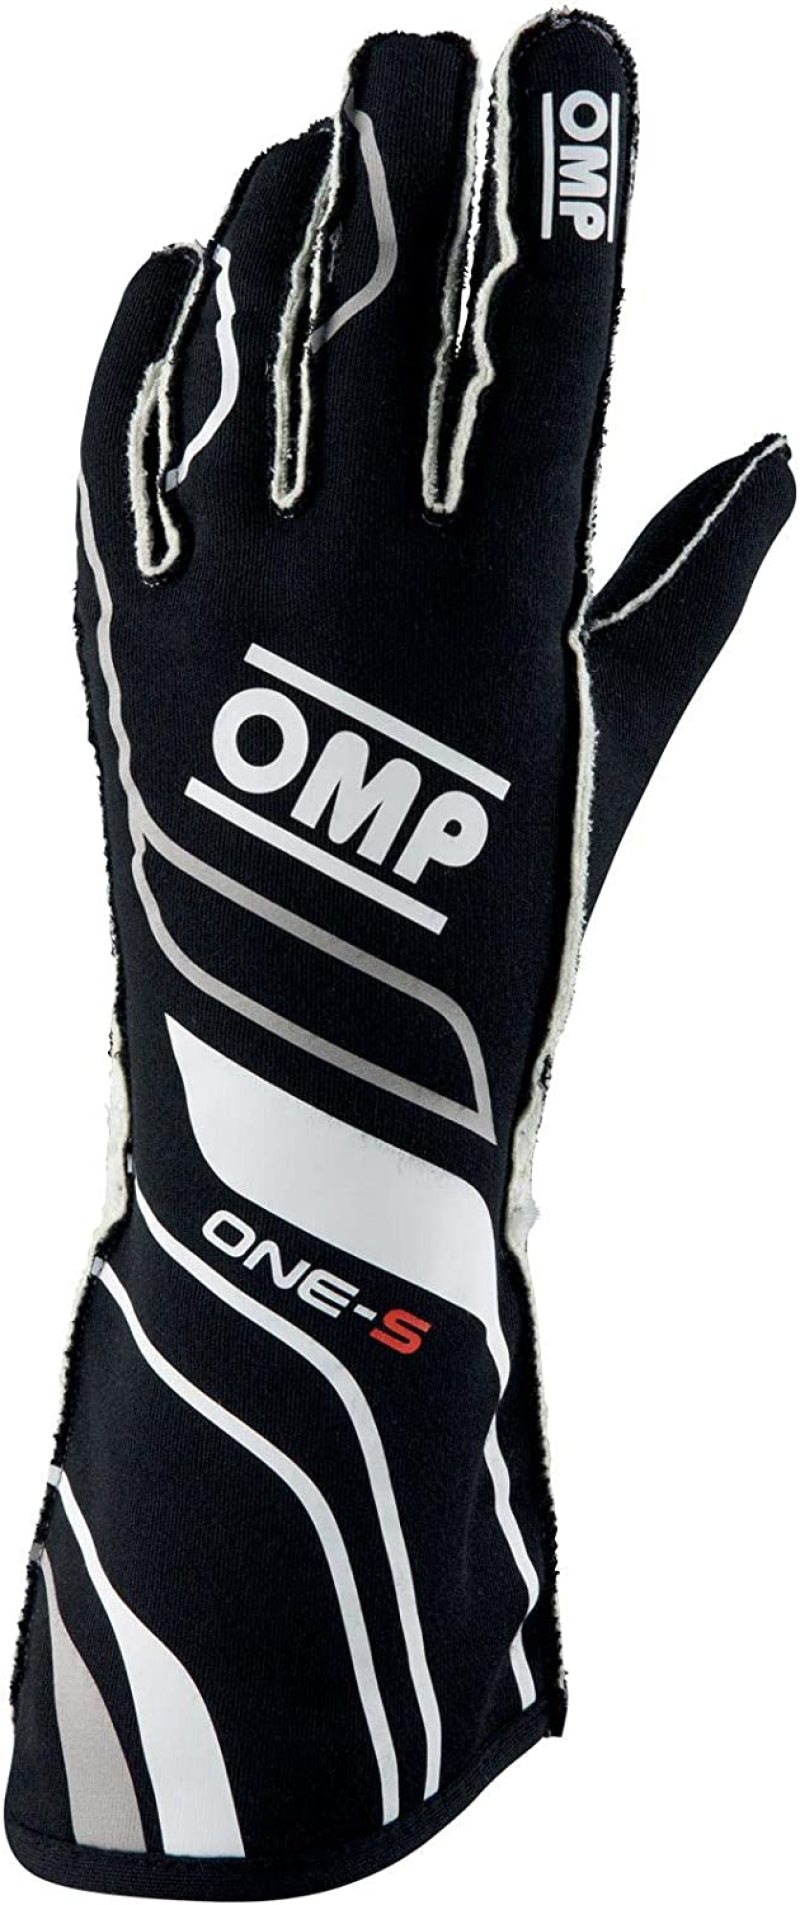 OMP One-S Gloves Black - Size XXL Fia 8556-2018 - IB0-0770-A01-071-XXL